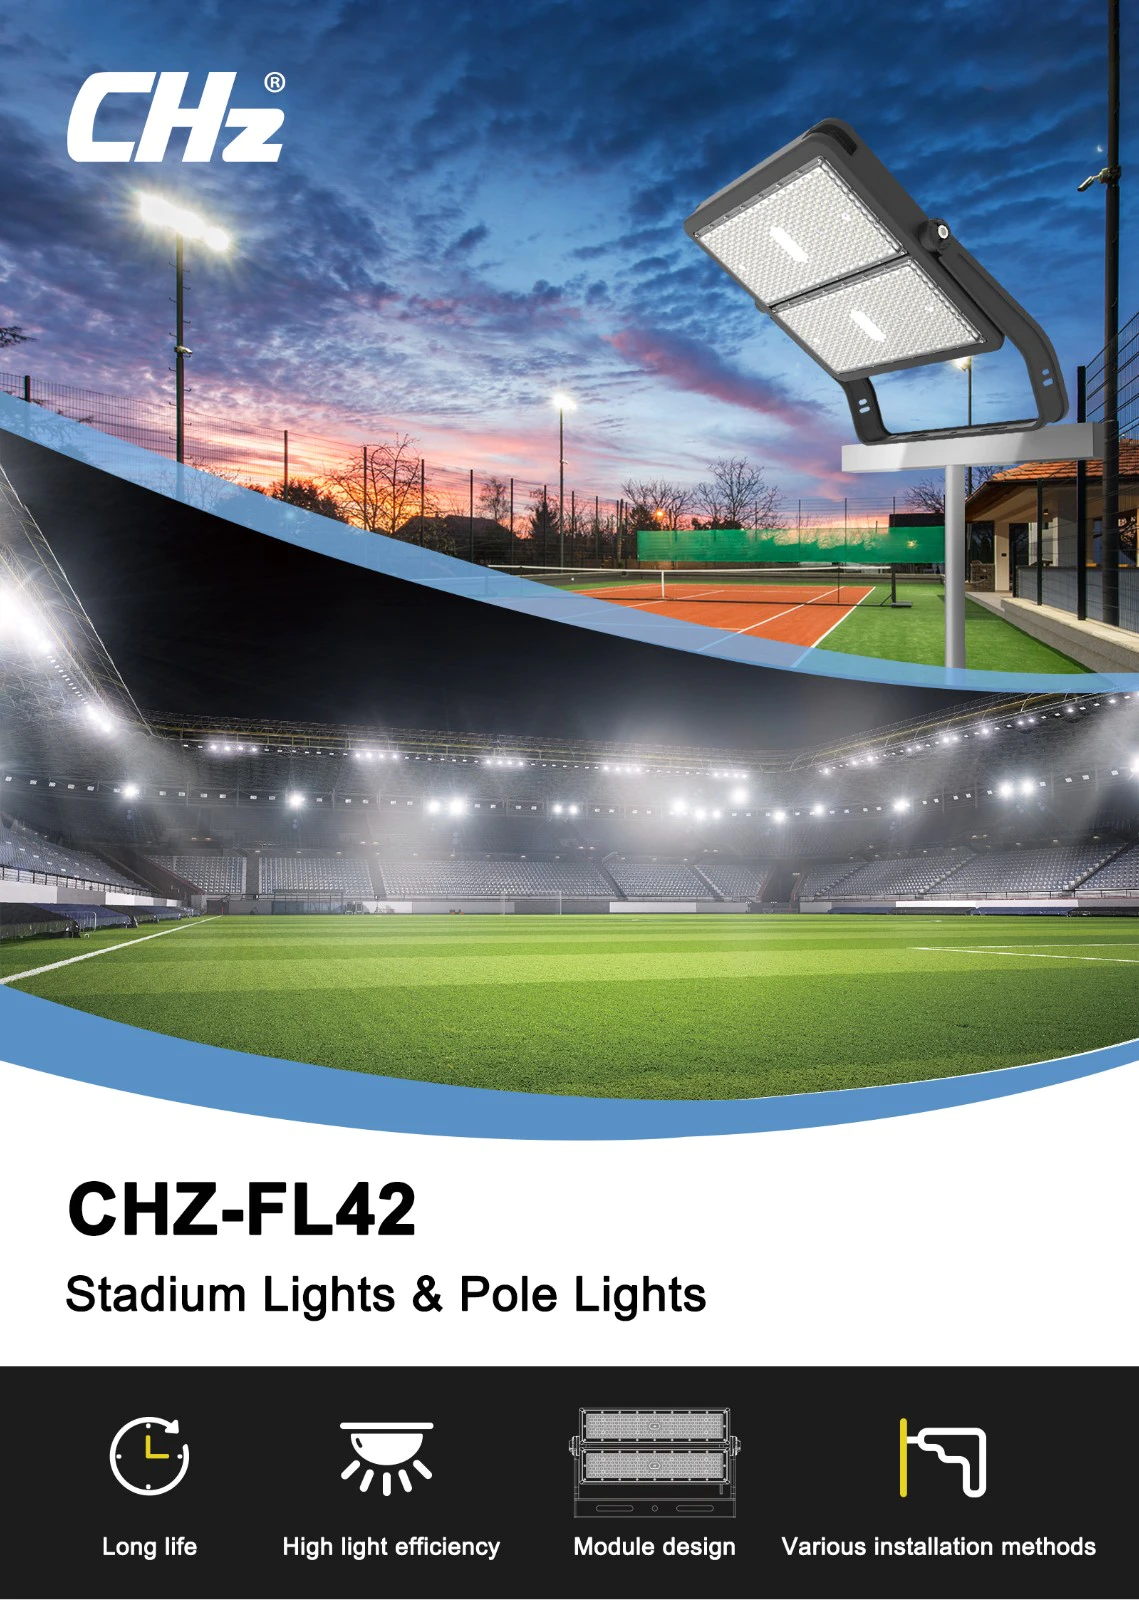 CHZ Lighting 400w flood light maker for basketball court